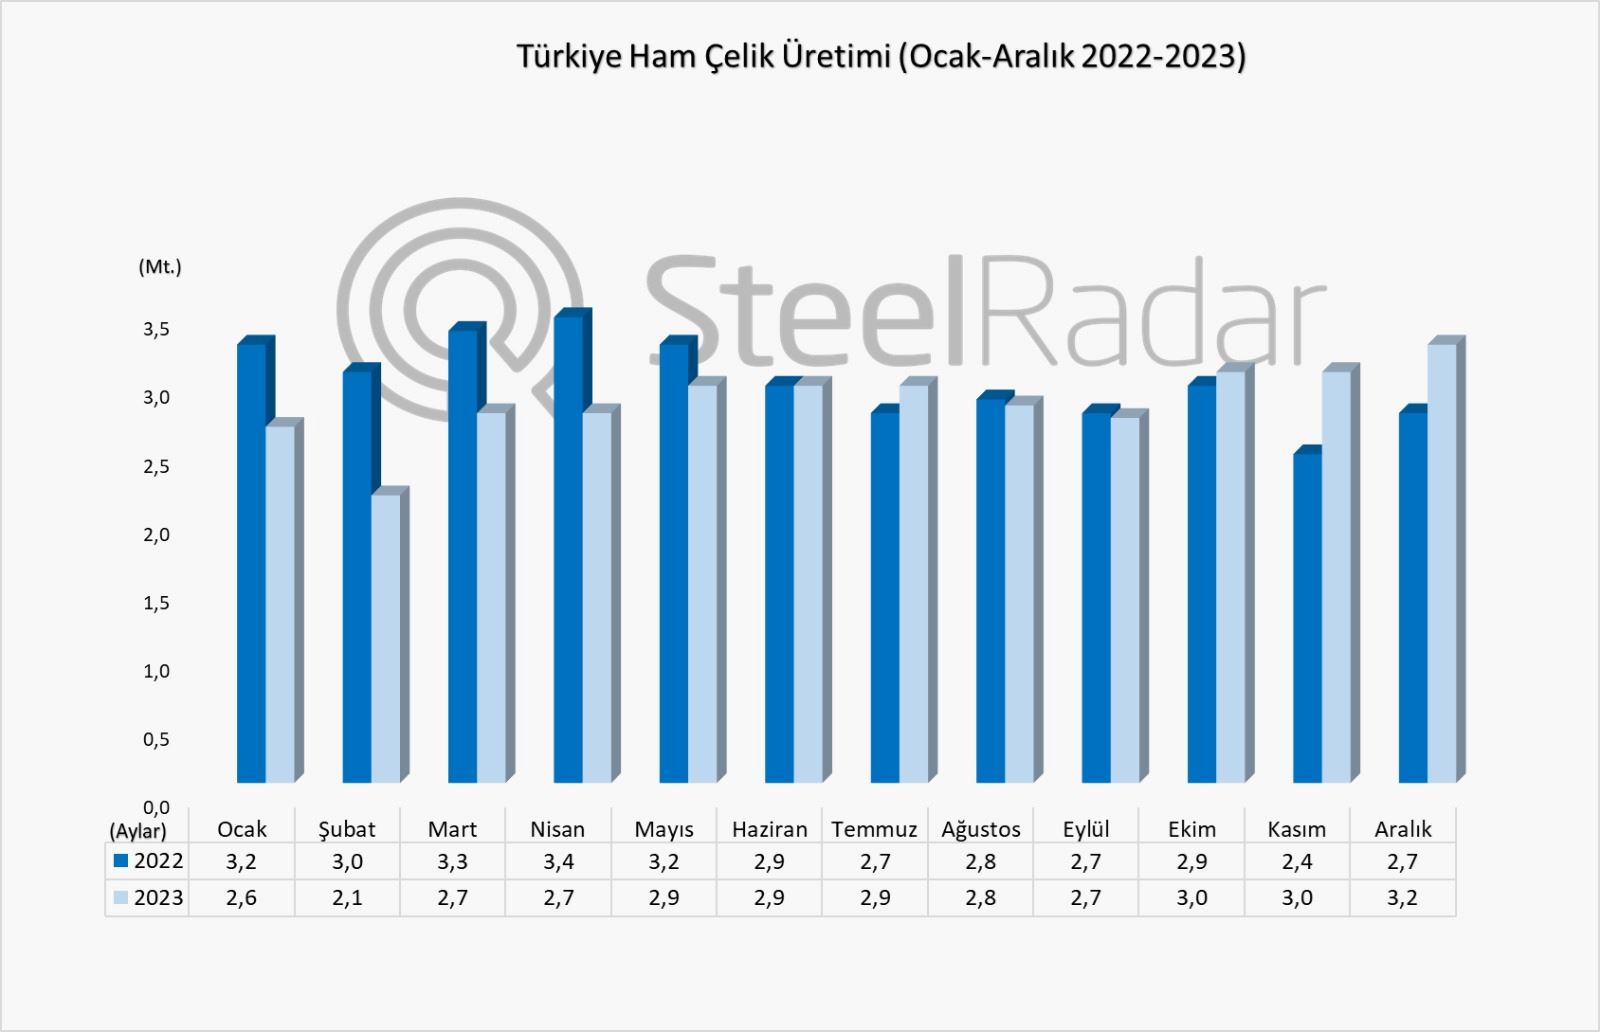 Dünya ham çelik üretimi 2023 yılında sabit kaldı, Türkiye’nin üretimi %4 azaldı